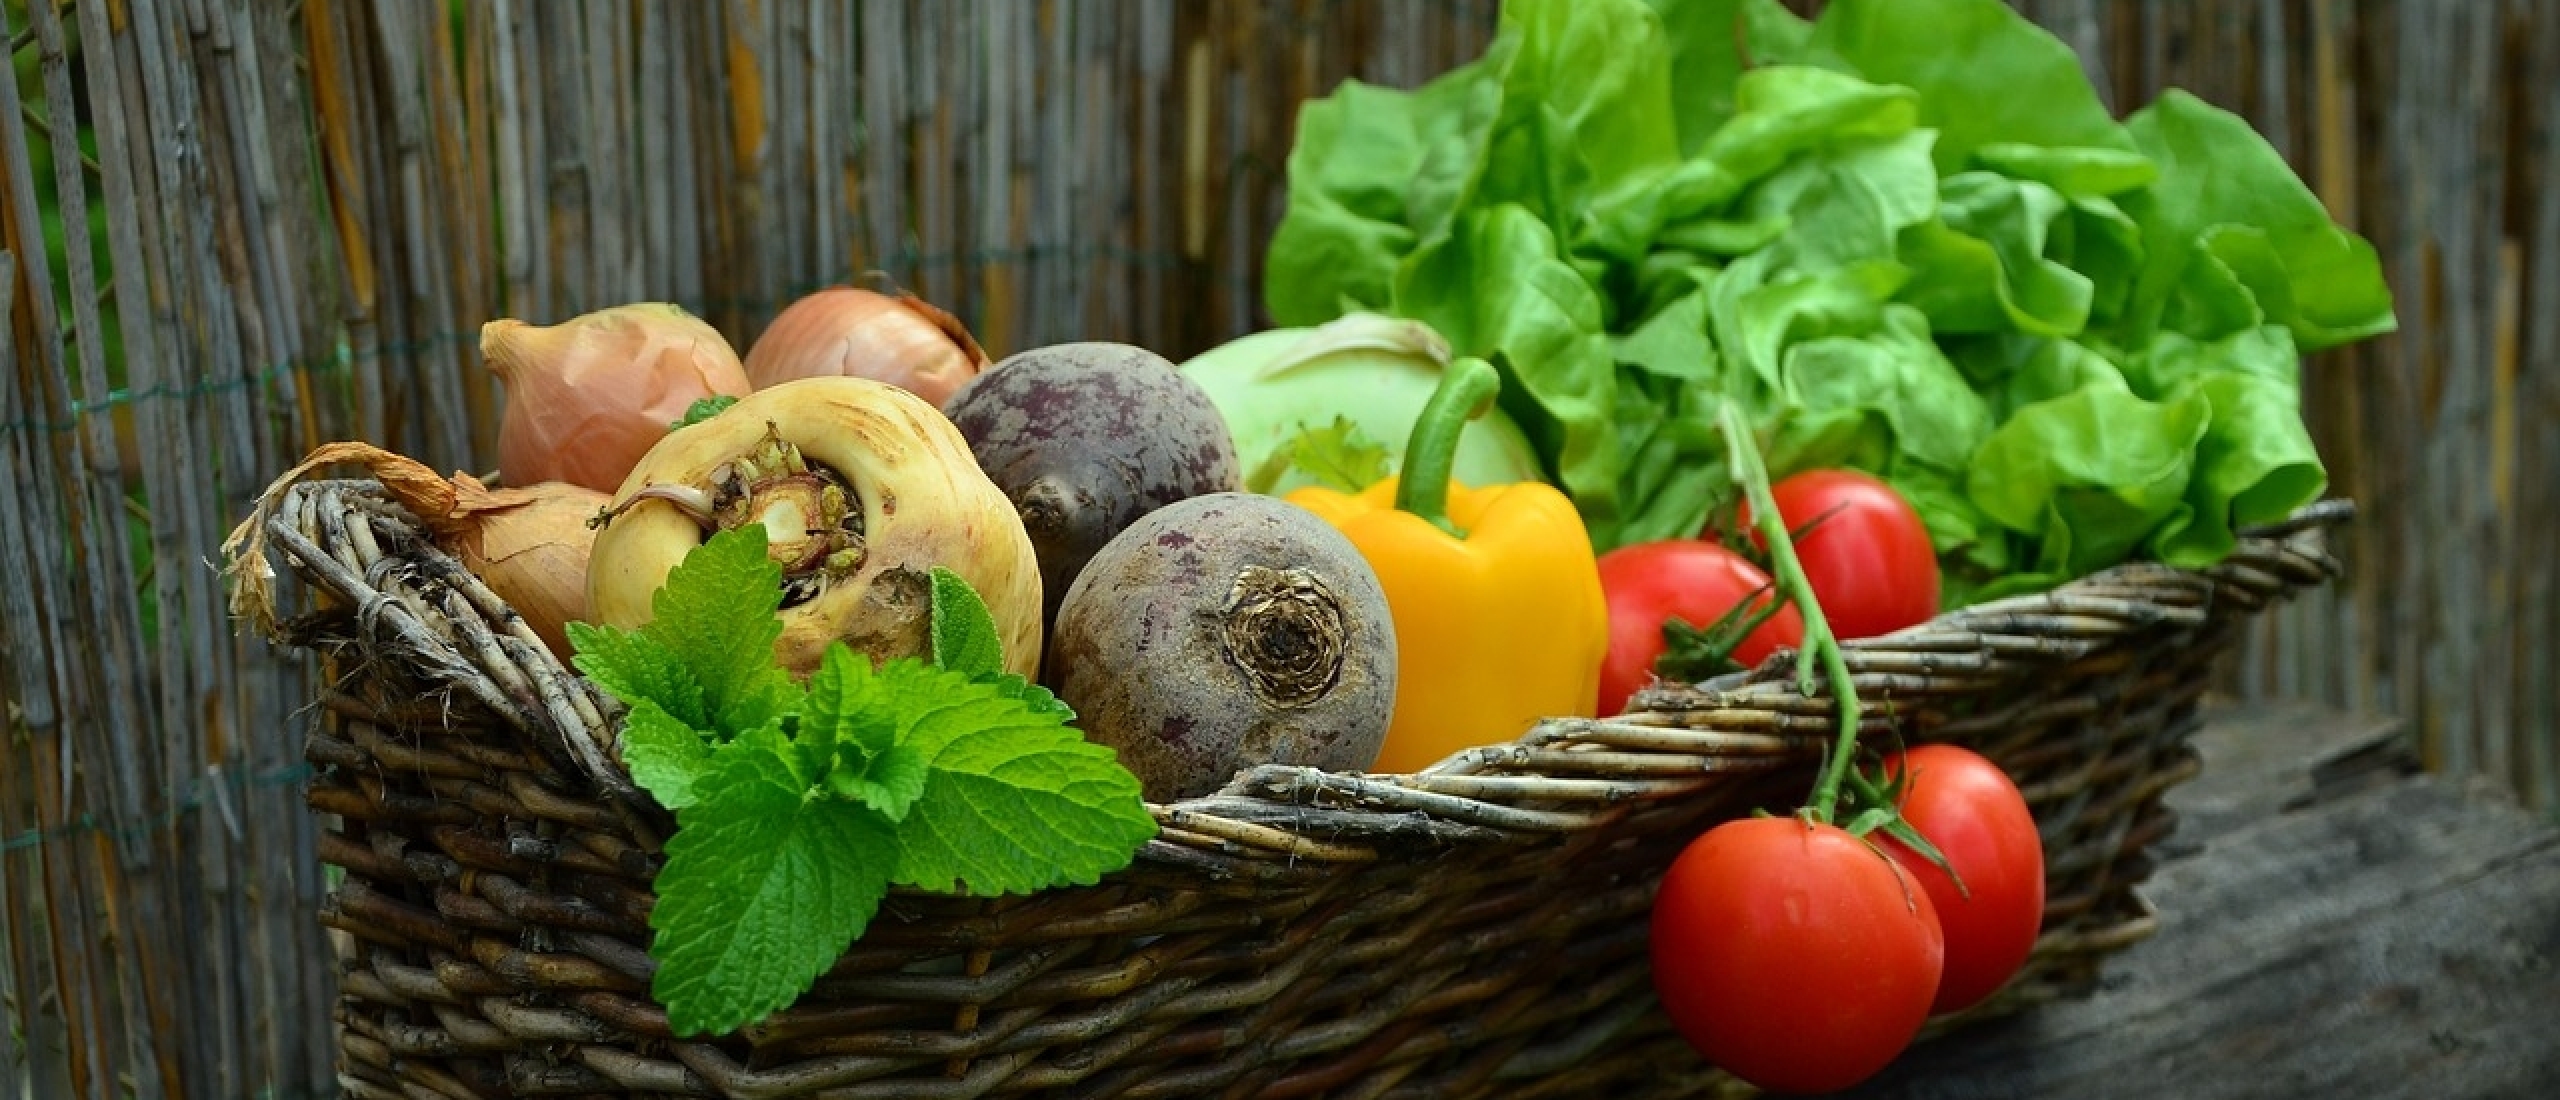 Ontdek de voordelen van seizoensgroenten voor een gezonde en duurzame levensstijl!